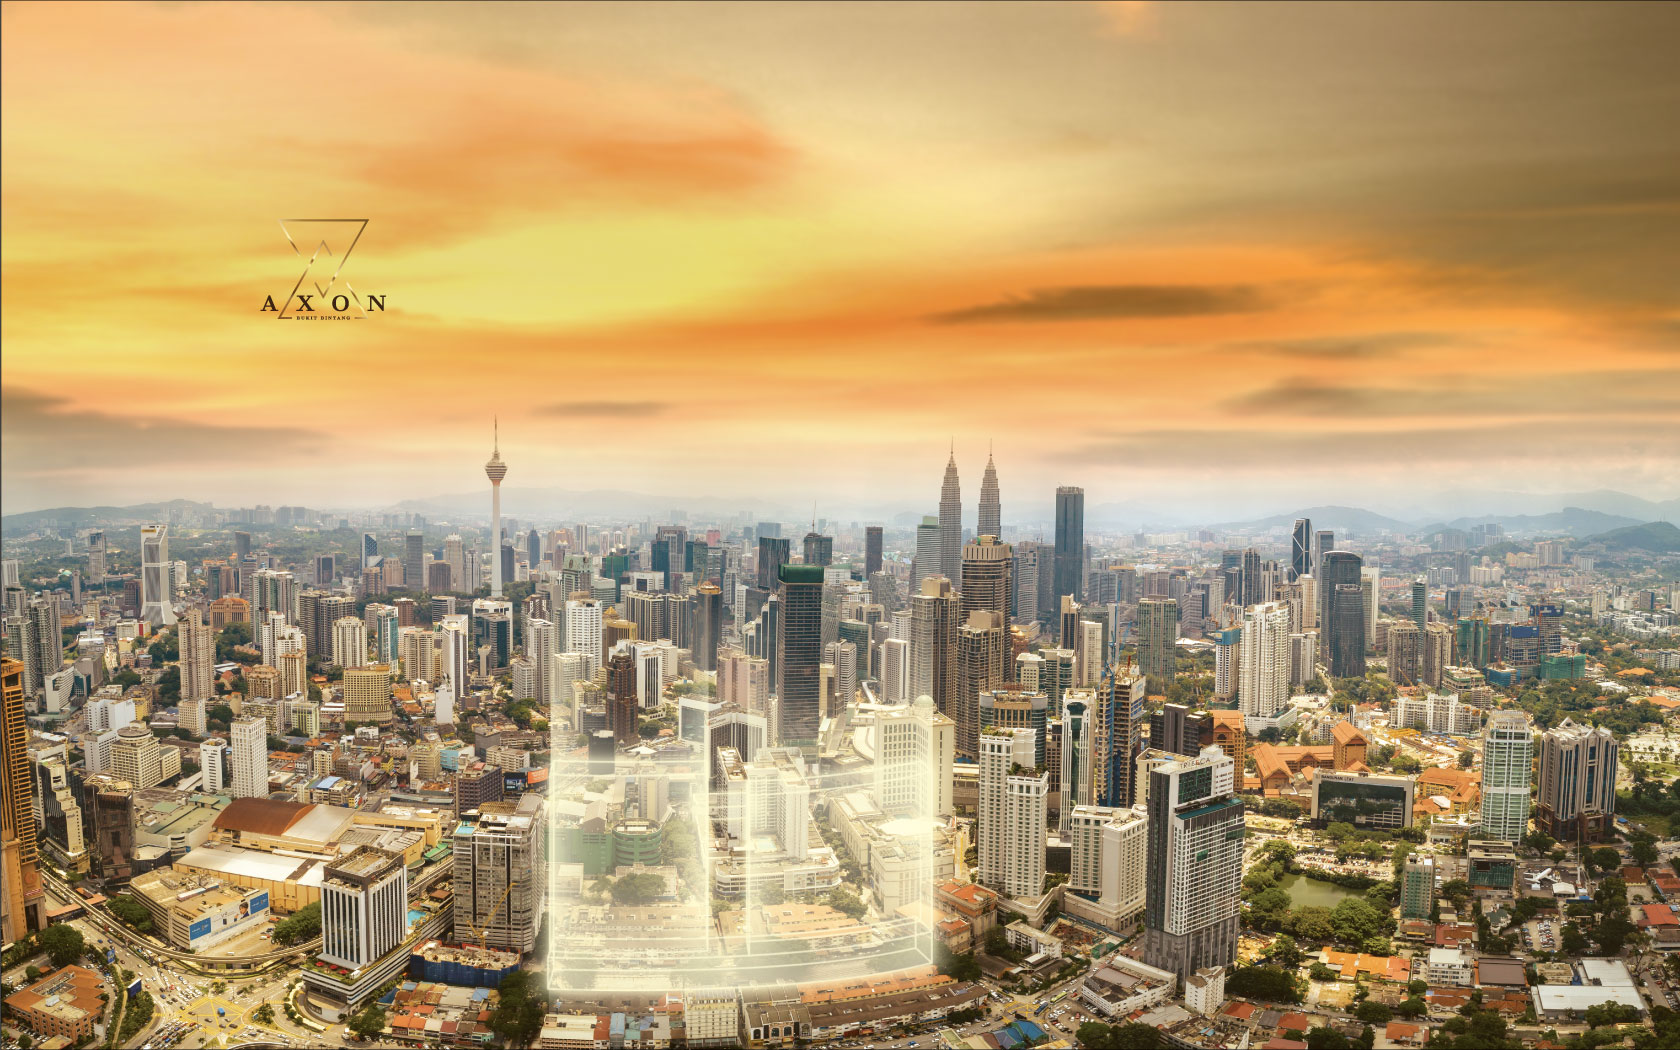 Axon Bukit Bintang , HD Wallpaper & Backgrounds